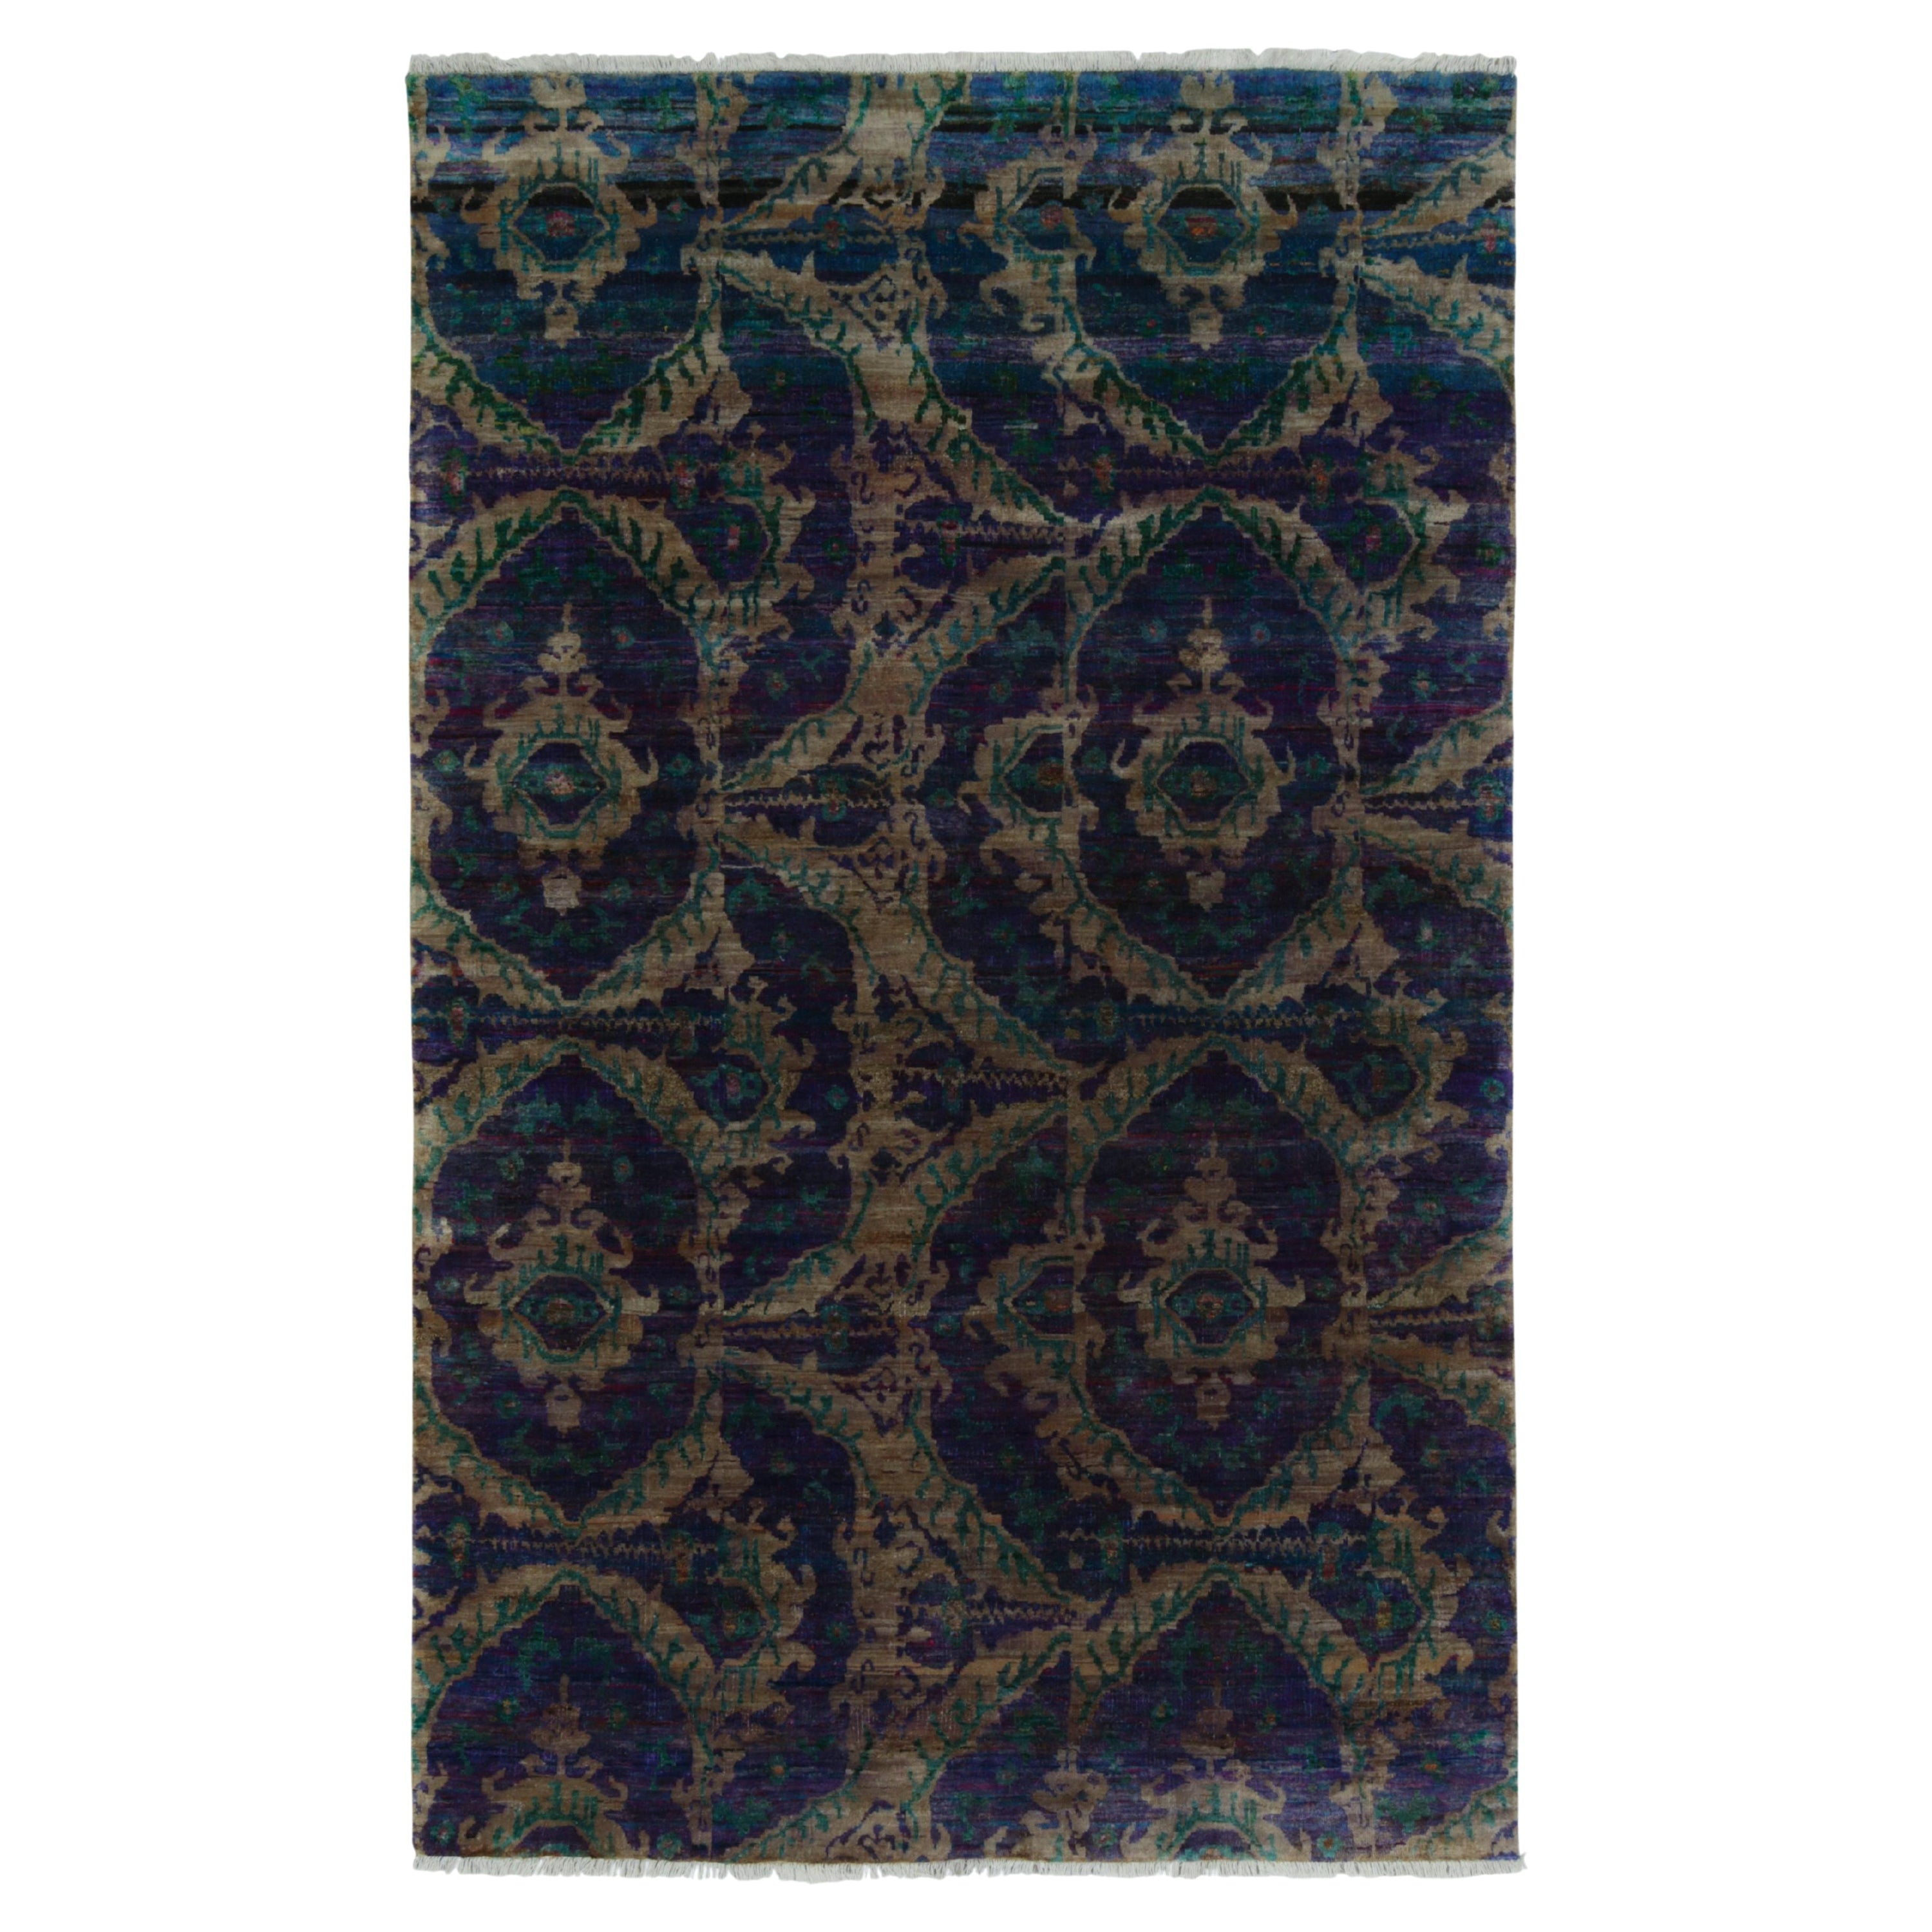 Rug & Kilim's Tabriz Style Teppich in Blau mit grünen und braunen Ikats-Mustern